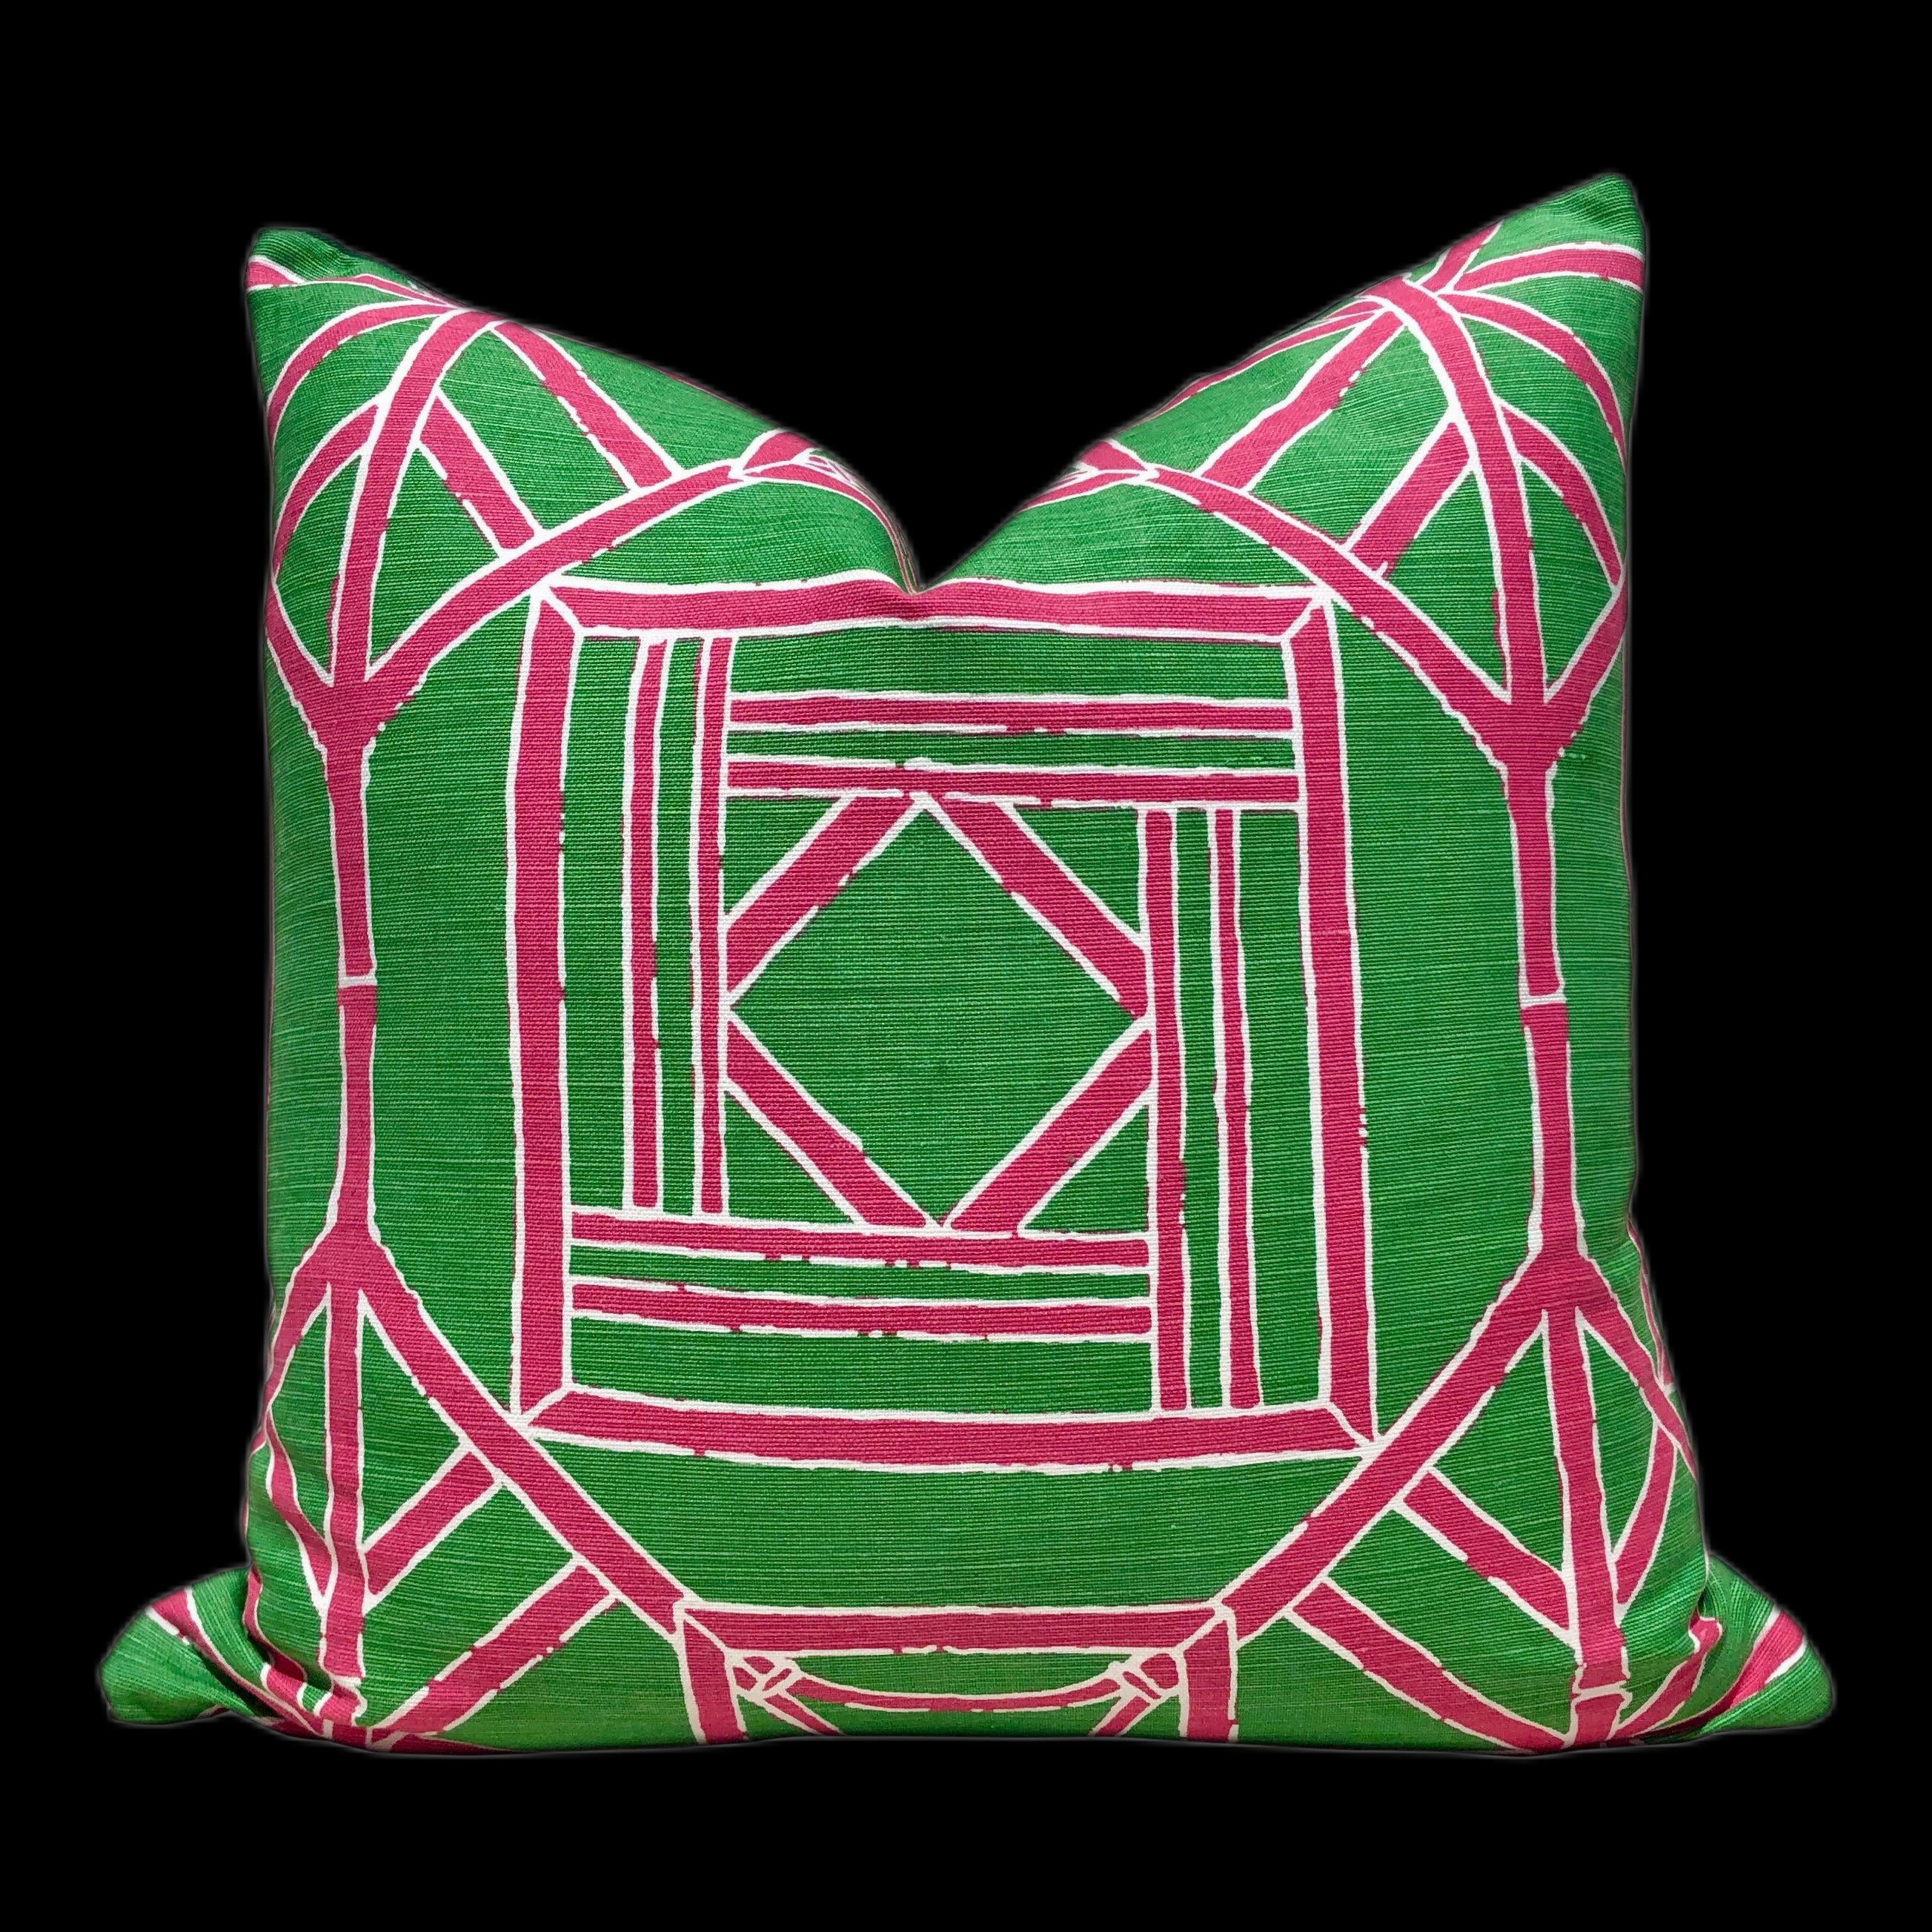 Shoji Panel Pillow Kelly Green Pink. Geometric Accent Pillow Cover Chinoiserie Pillow Green Pink Pillow Euro Sham Pillow Designer Pillow